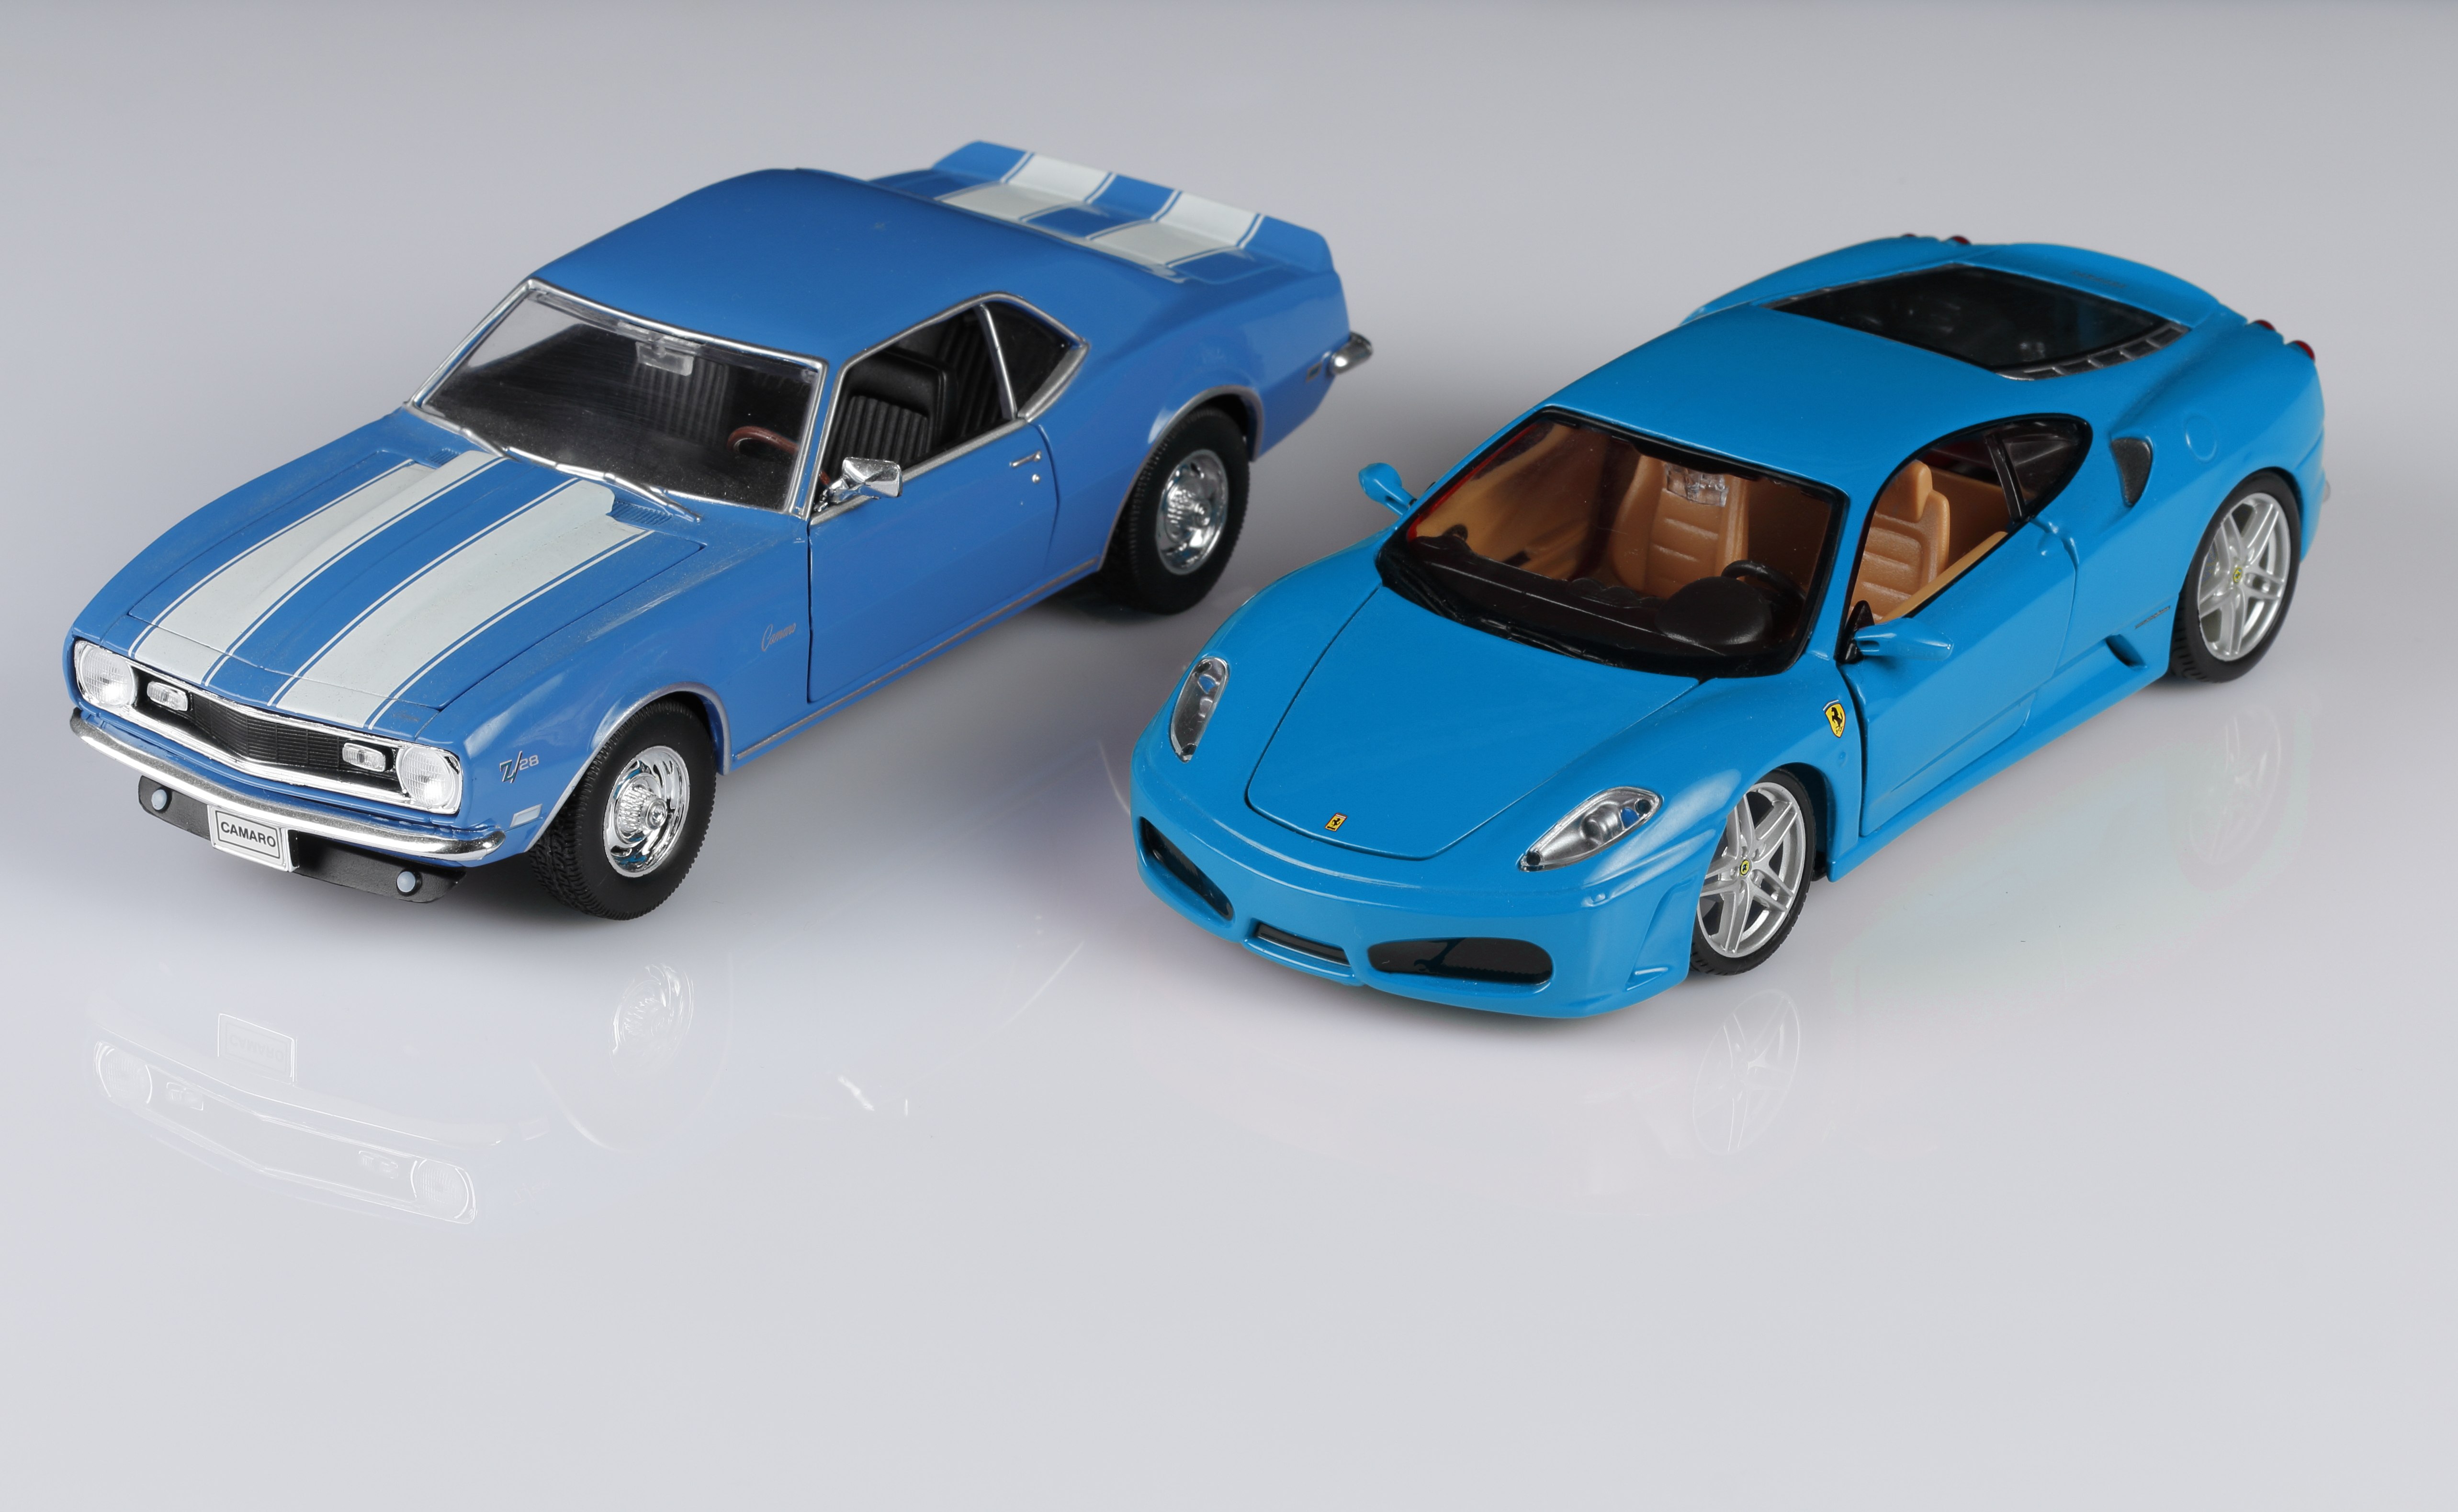 Risultato finale del fotoritocco! Una Ferrari ed una Camaro dello stesso colore.